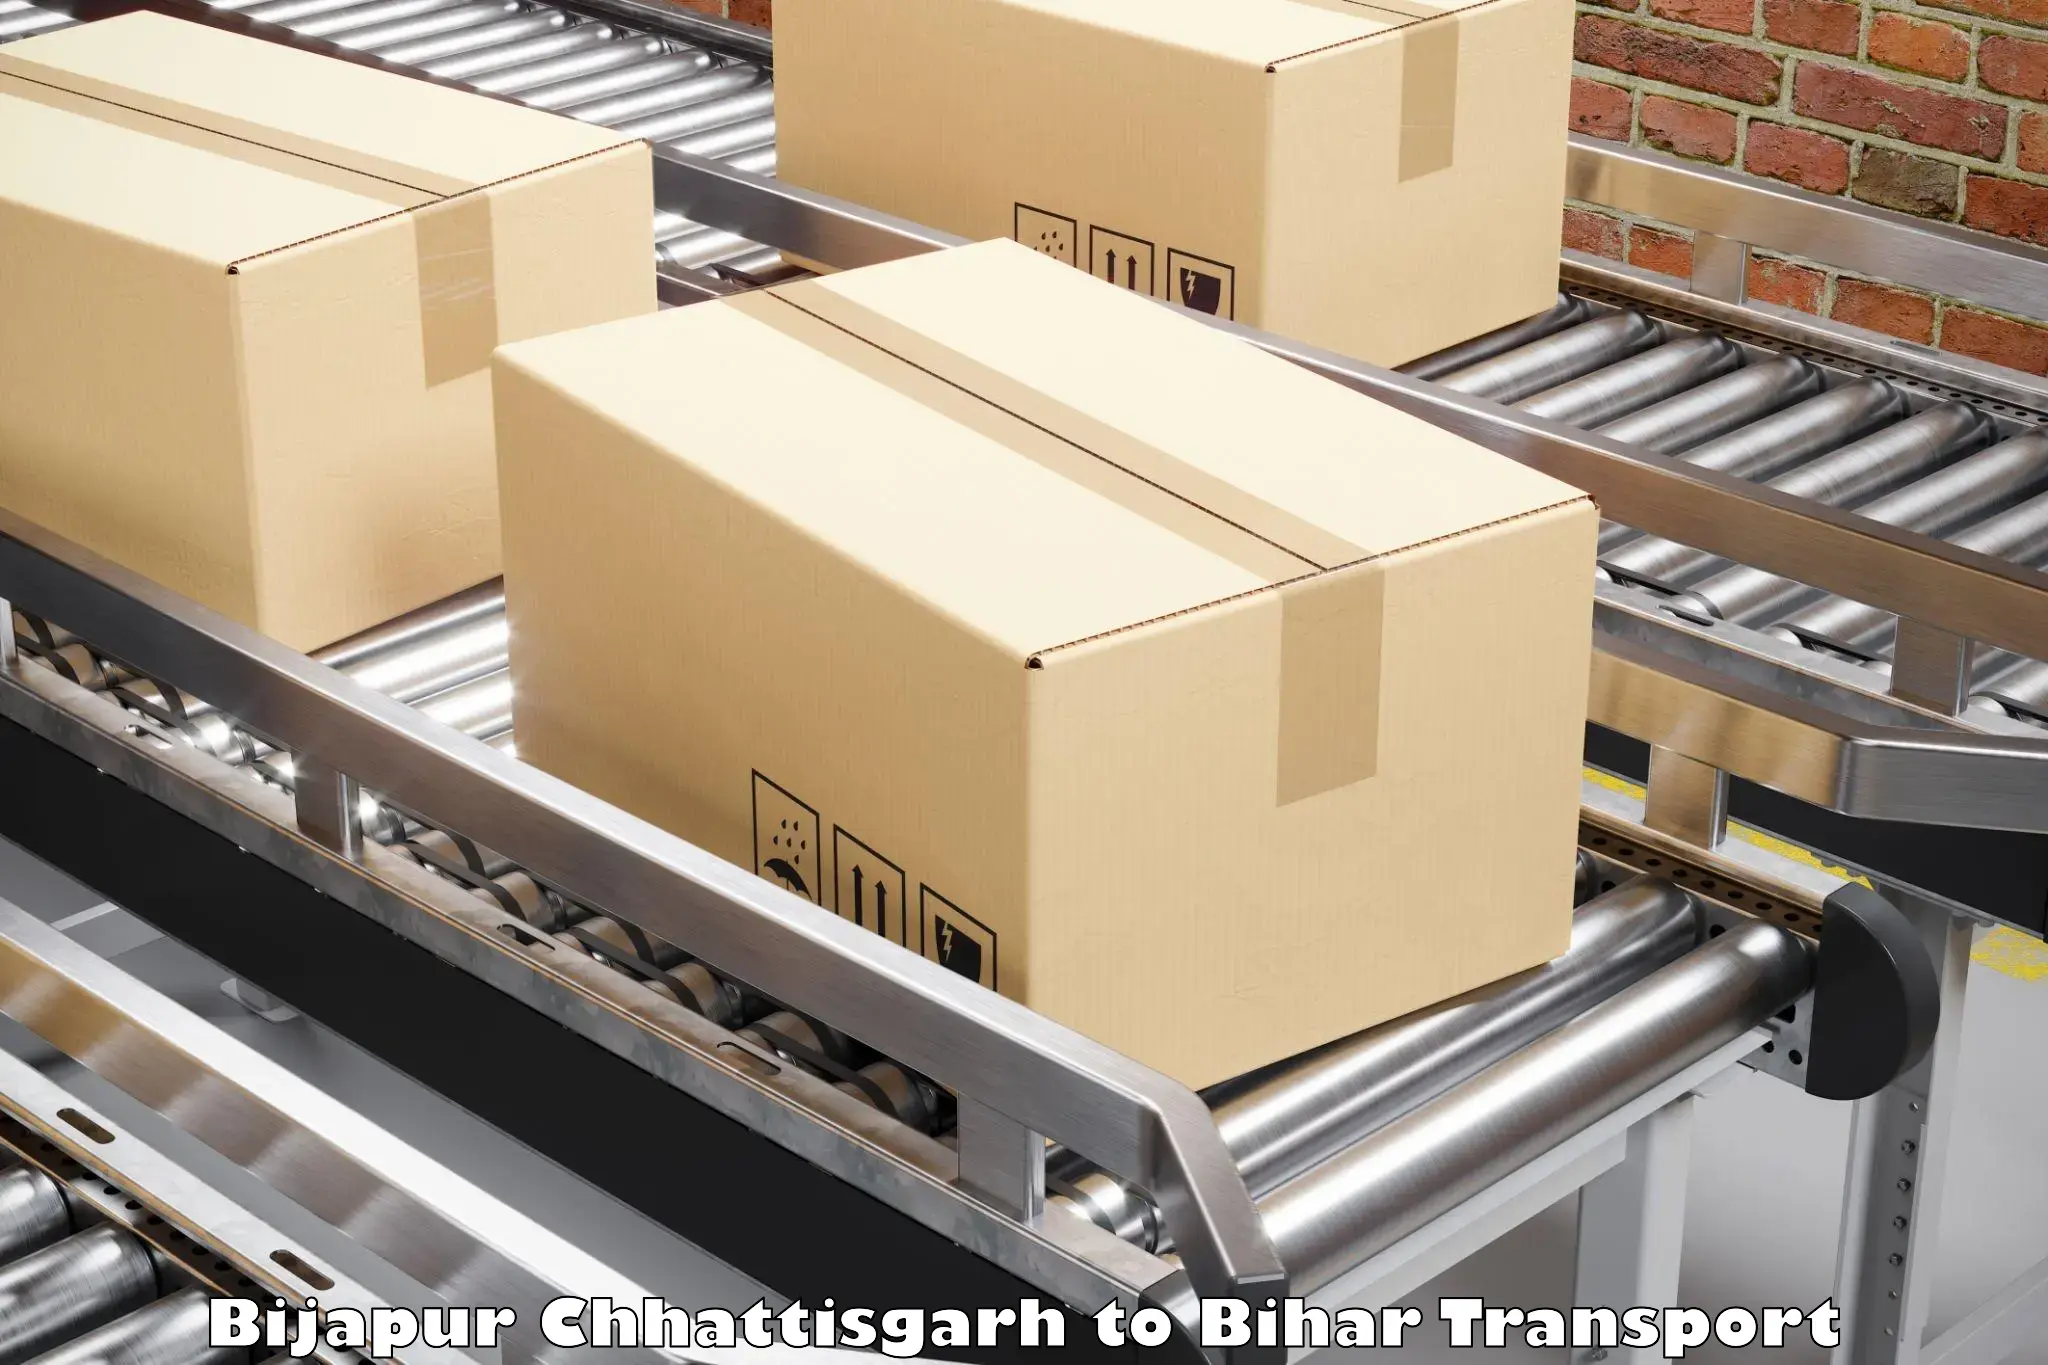 Package delivery services Bijapur Chhattisgarh to Bhagalpur